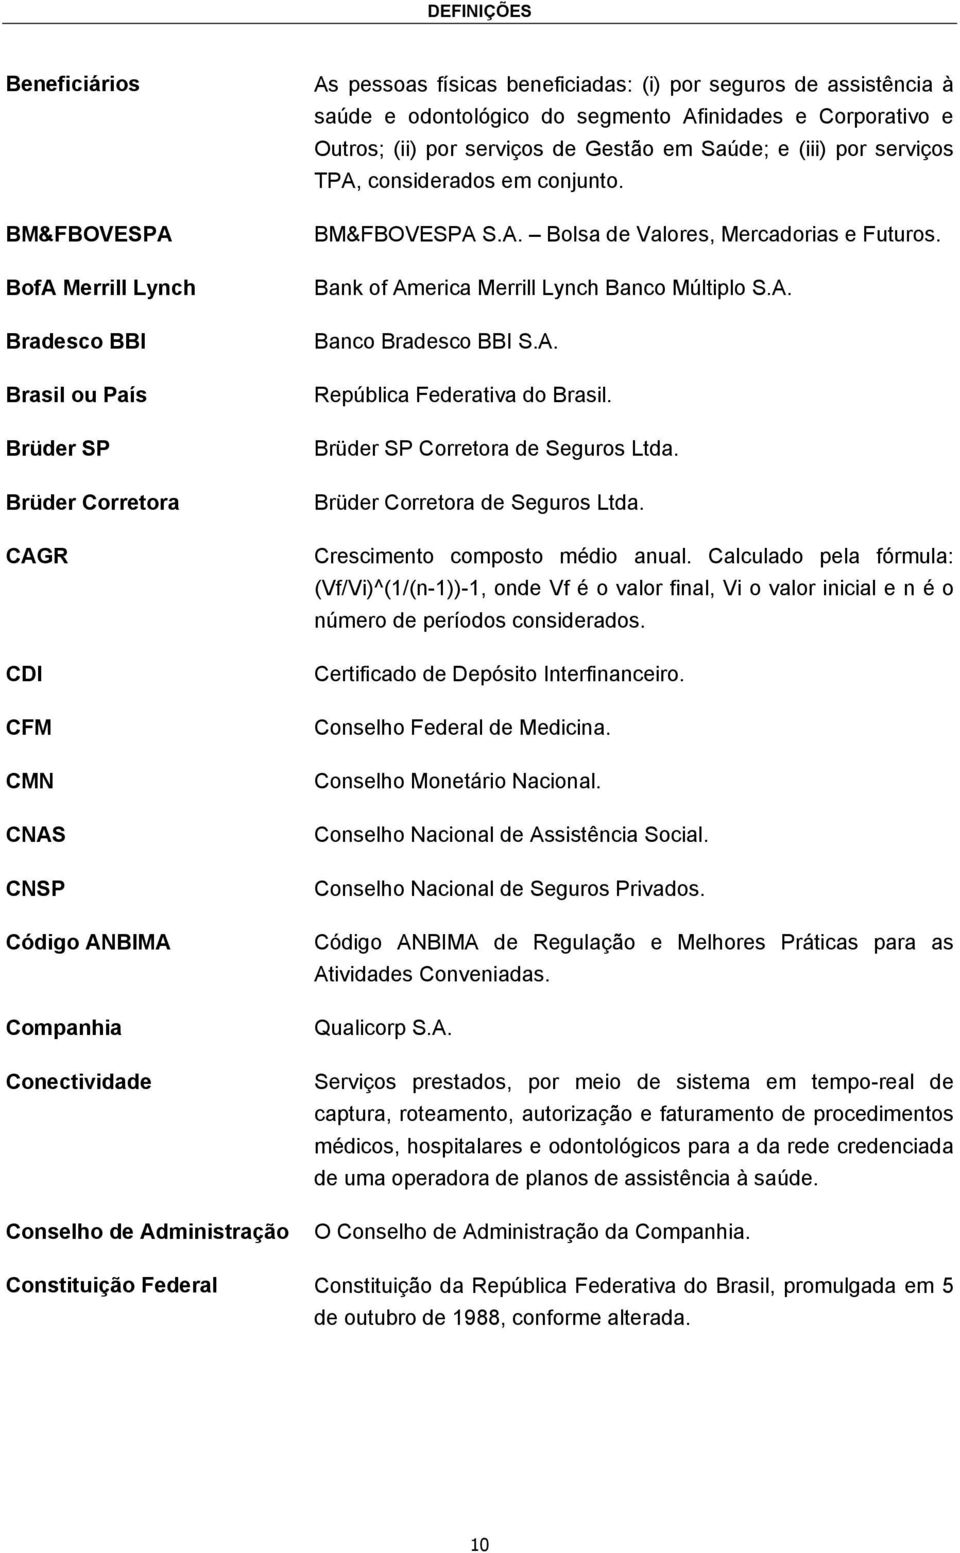 serviços TPA, considerados em conjunto. BM&FBOVESPA S.A. Bolsa de Valores, Mercadorias e Futuros. Bank of America Merrill Lynch Banco Múltiplo S.A. Banco Bradesco BBI S.A. República Federativa do Brasil.